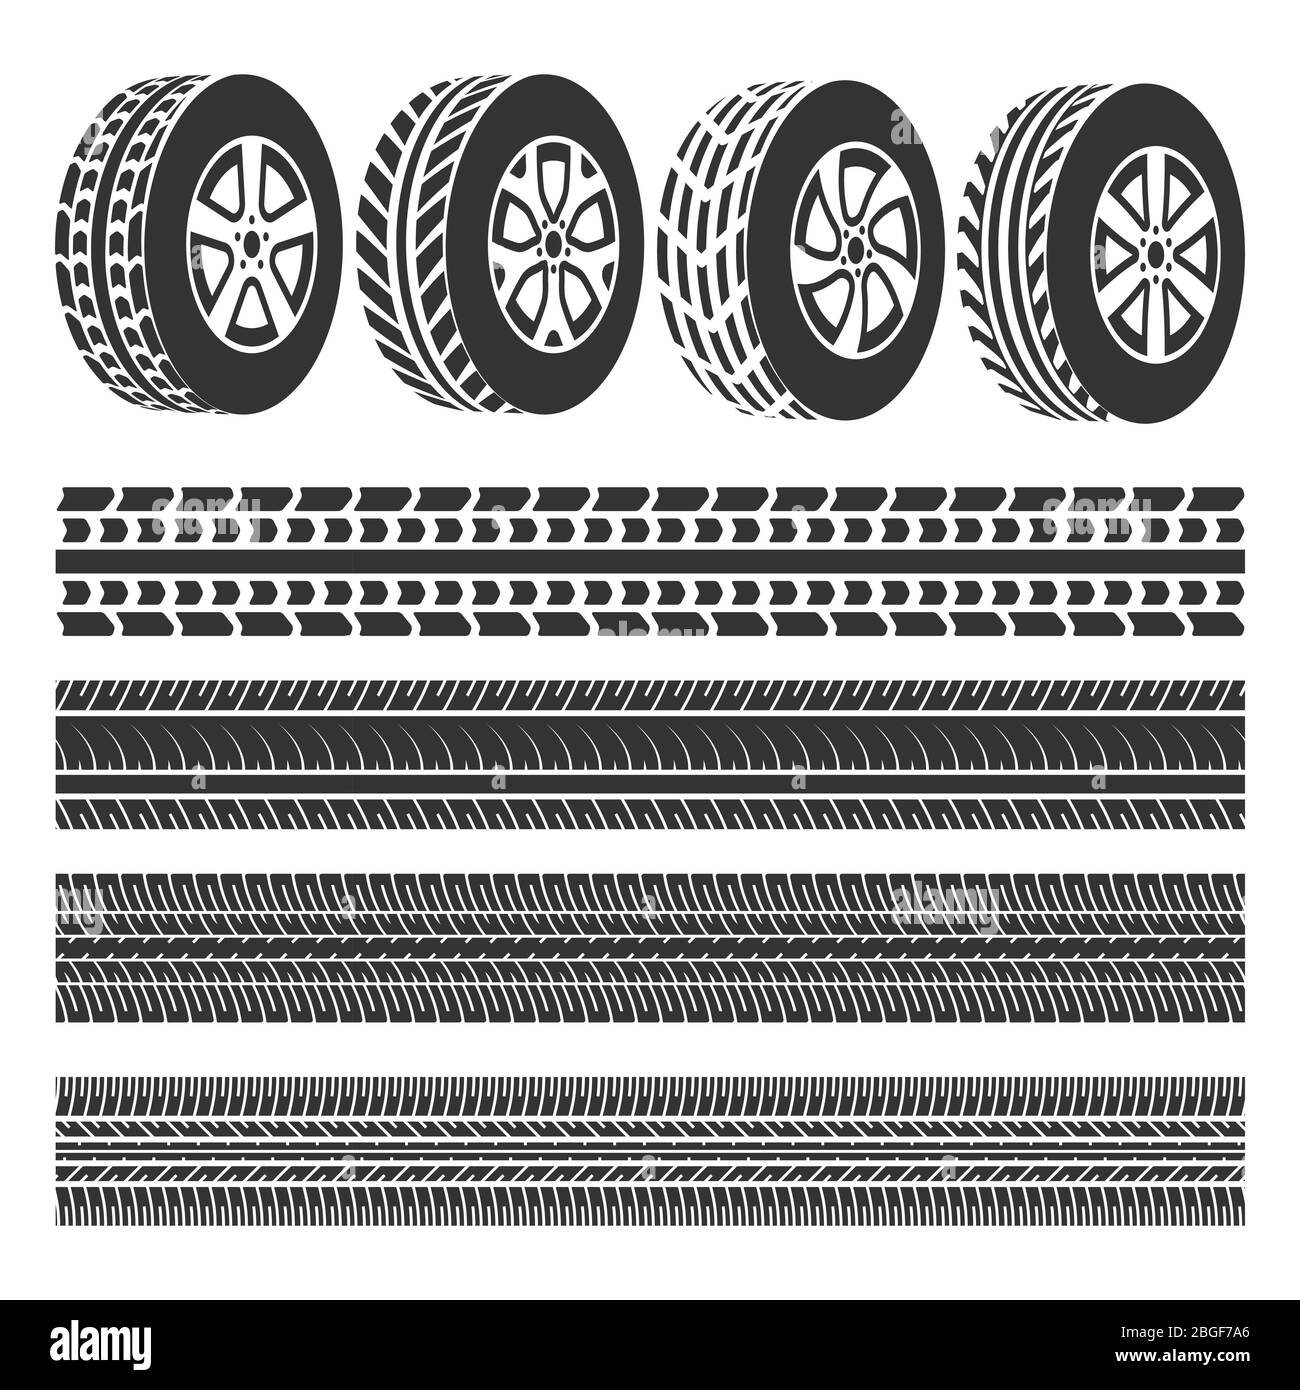 Reifengeschäft, Reifenspuren Satz Vektor isoliert auf weißem Hintergrund Illustration Stock Vektor